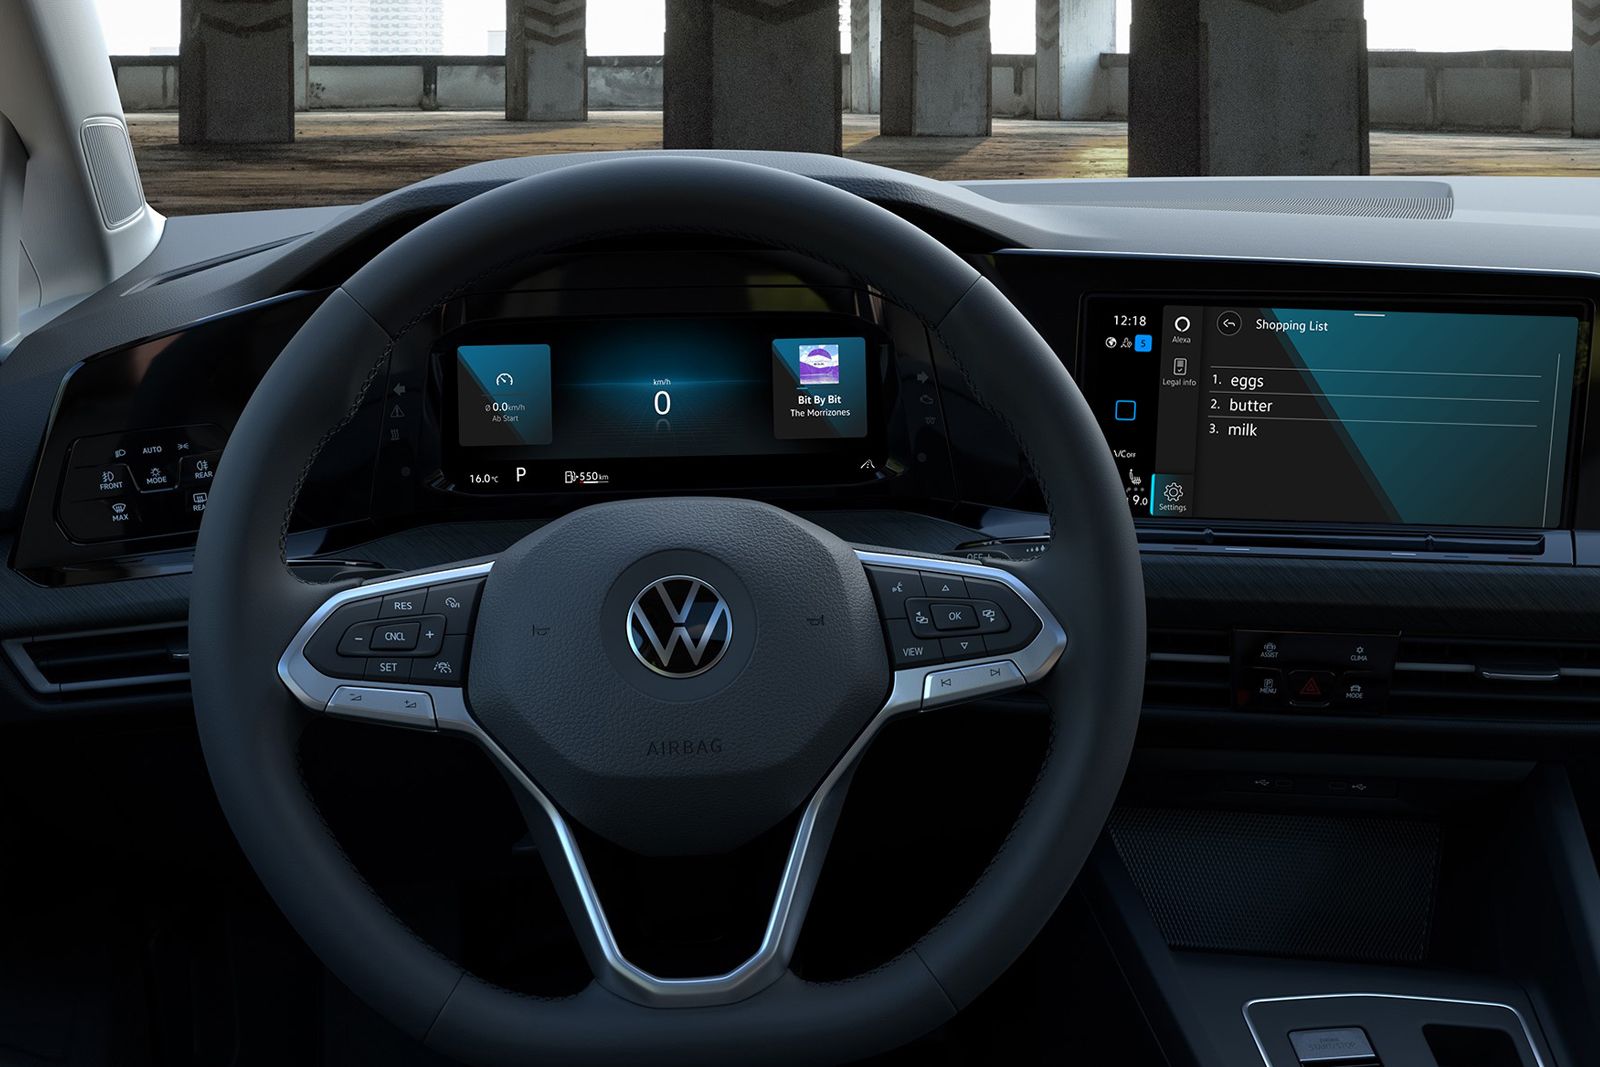 New Volkswagen Golf will feature Alexa built-in image 1